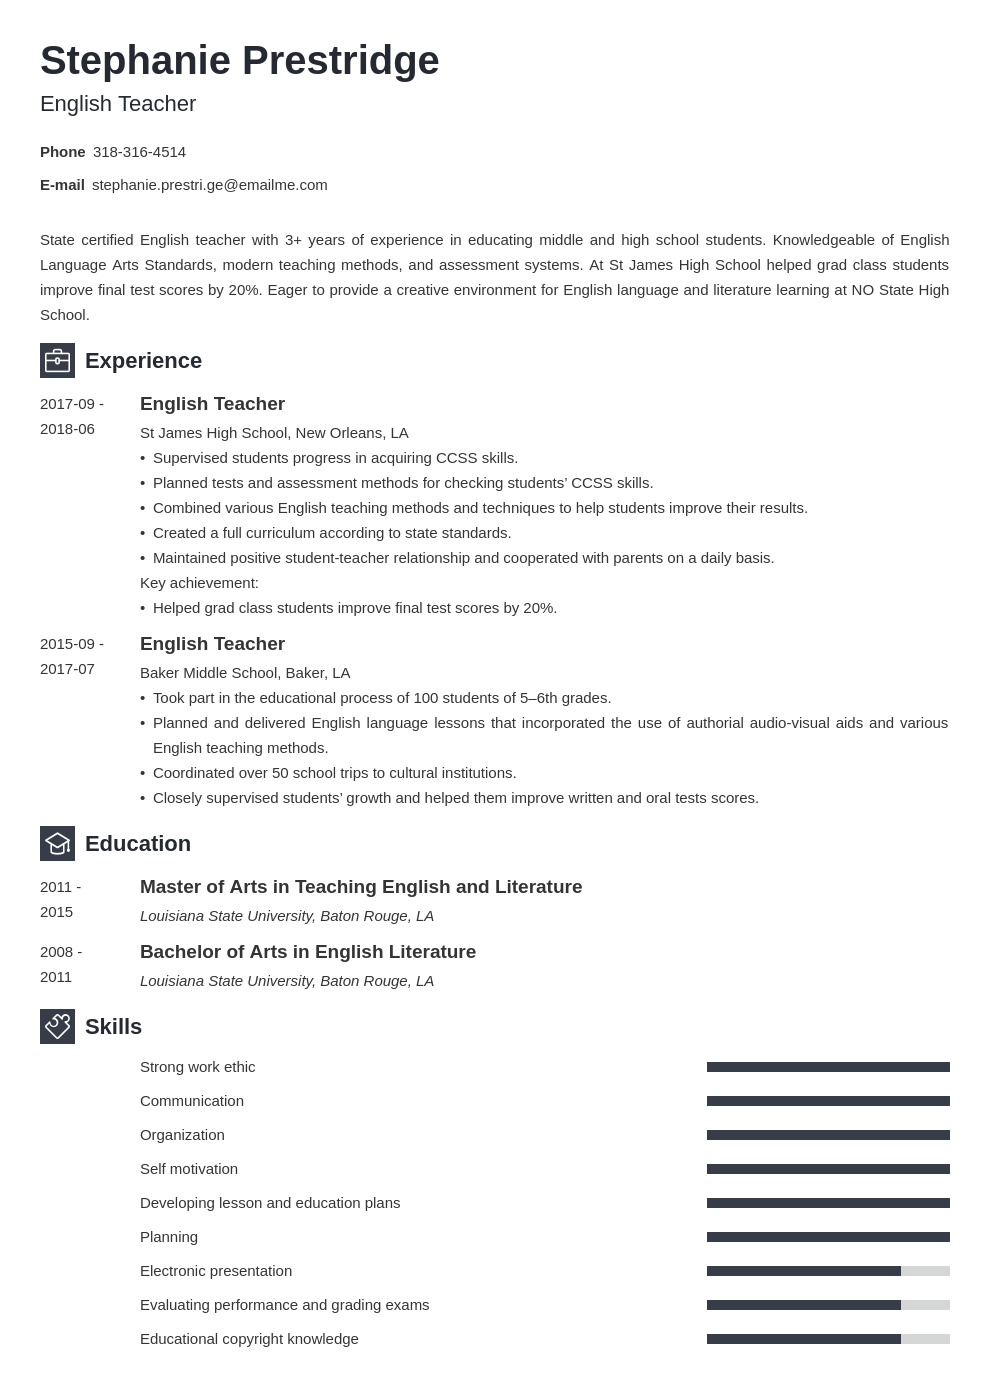 mẫu các kỹ năng trong CV bằng tiếng Anh